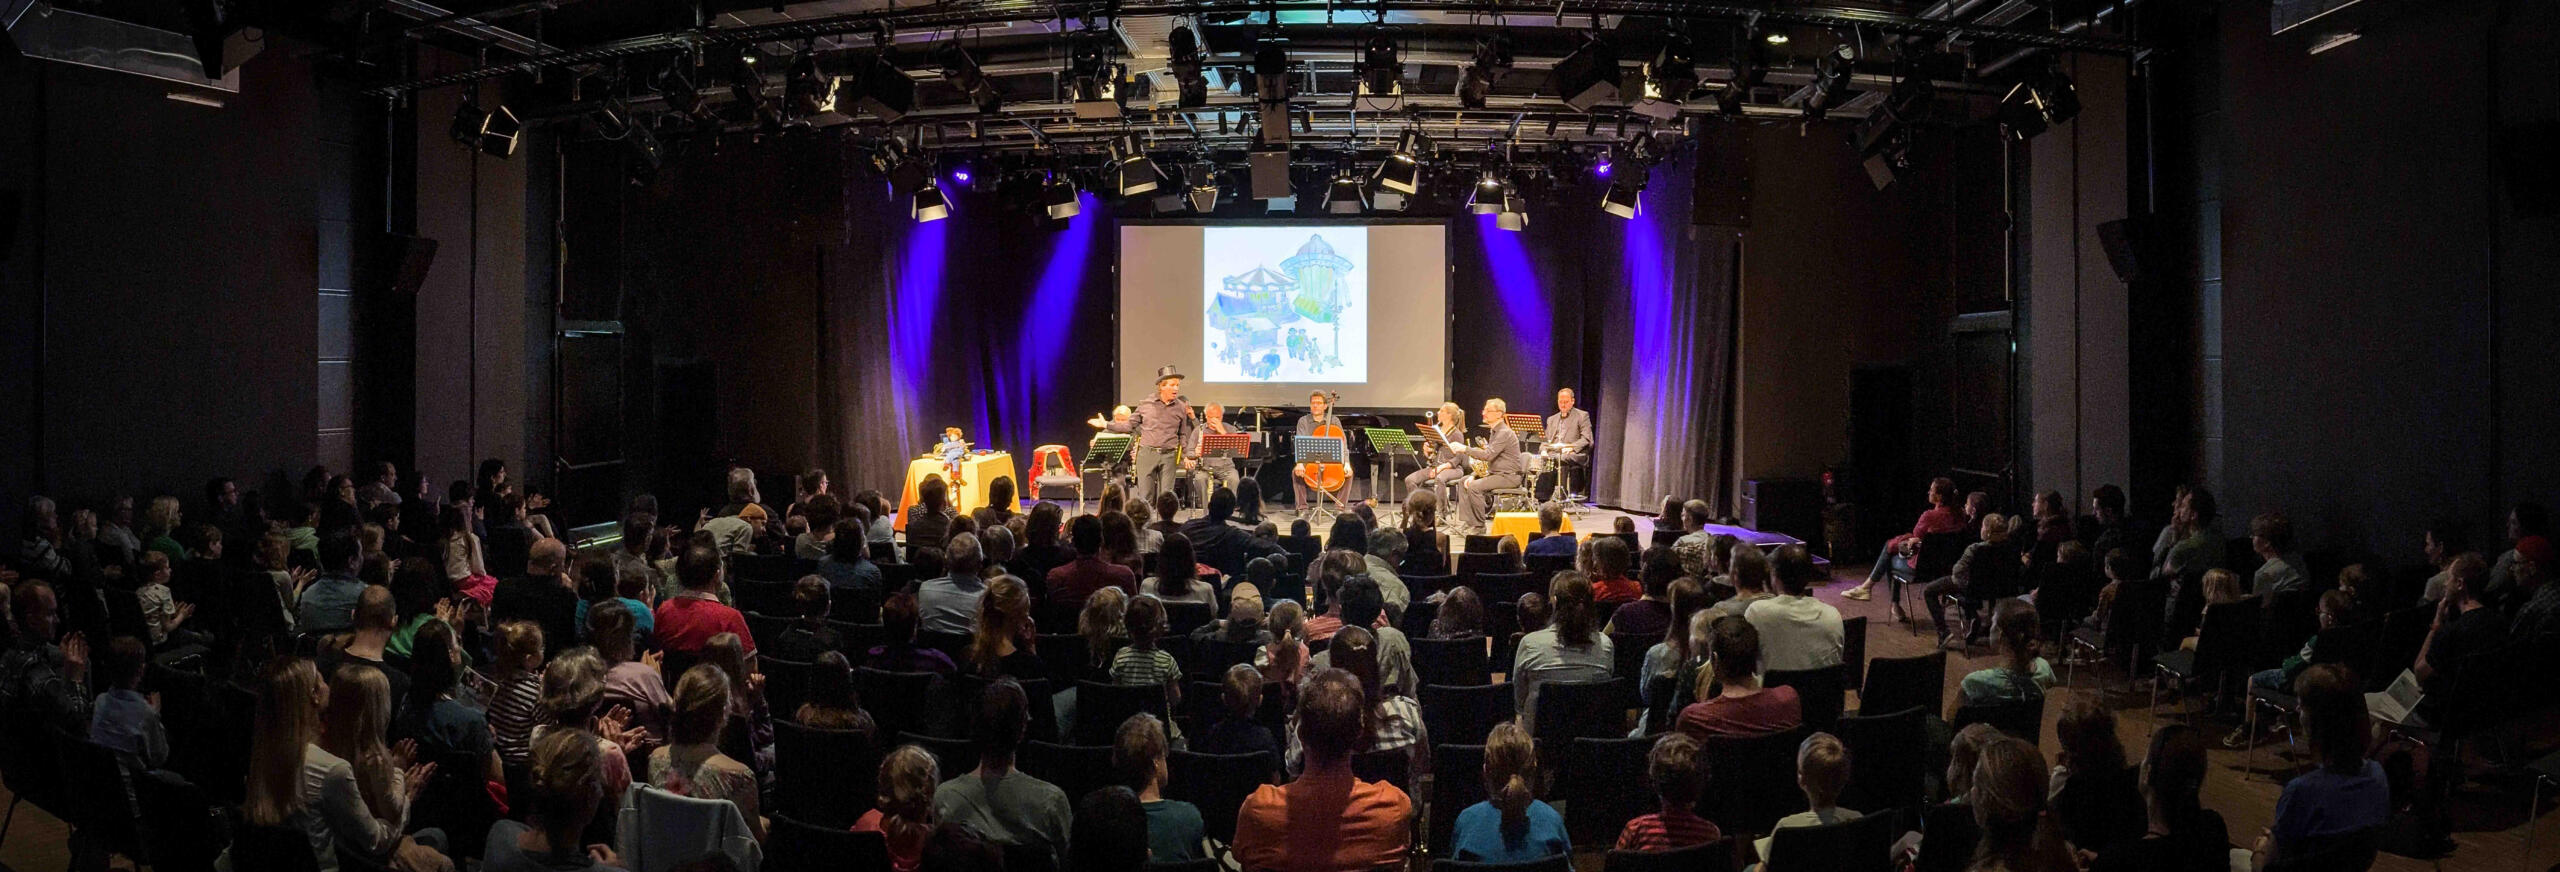 Panoramabild von einer Vorstellung aus dem Saal X am Gasteig HP8. Man sieht von hinten auf das Publikum und die hell erleuchtete Bühne auf der mehrere Schauspieler:innen und Musiker:innen sitzen.